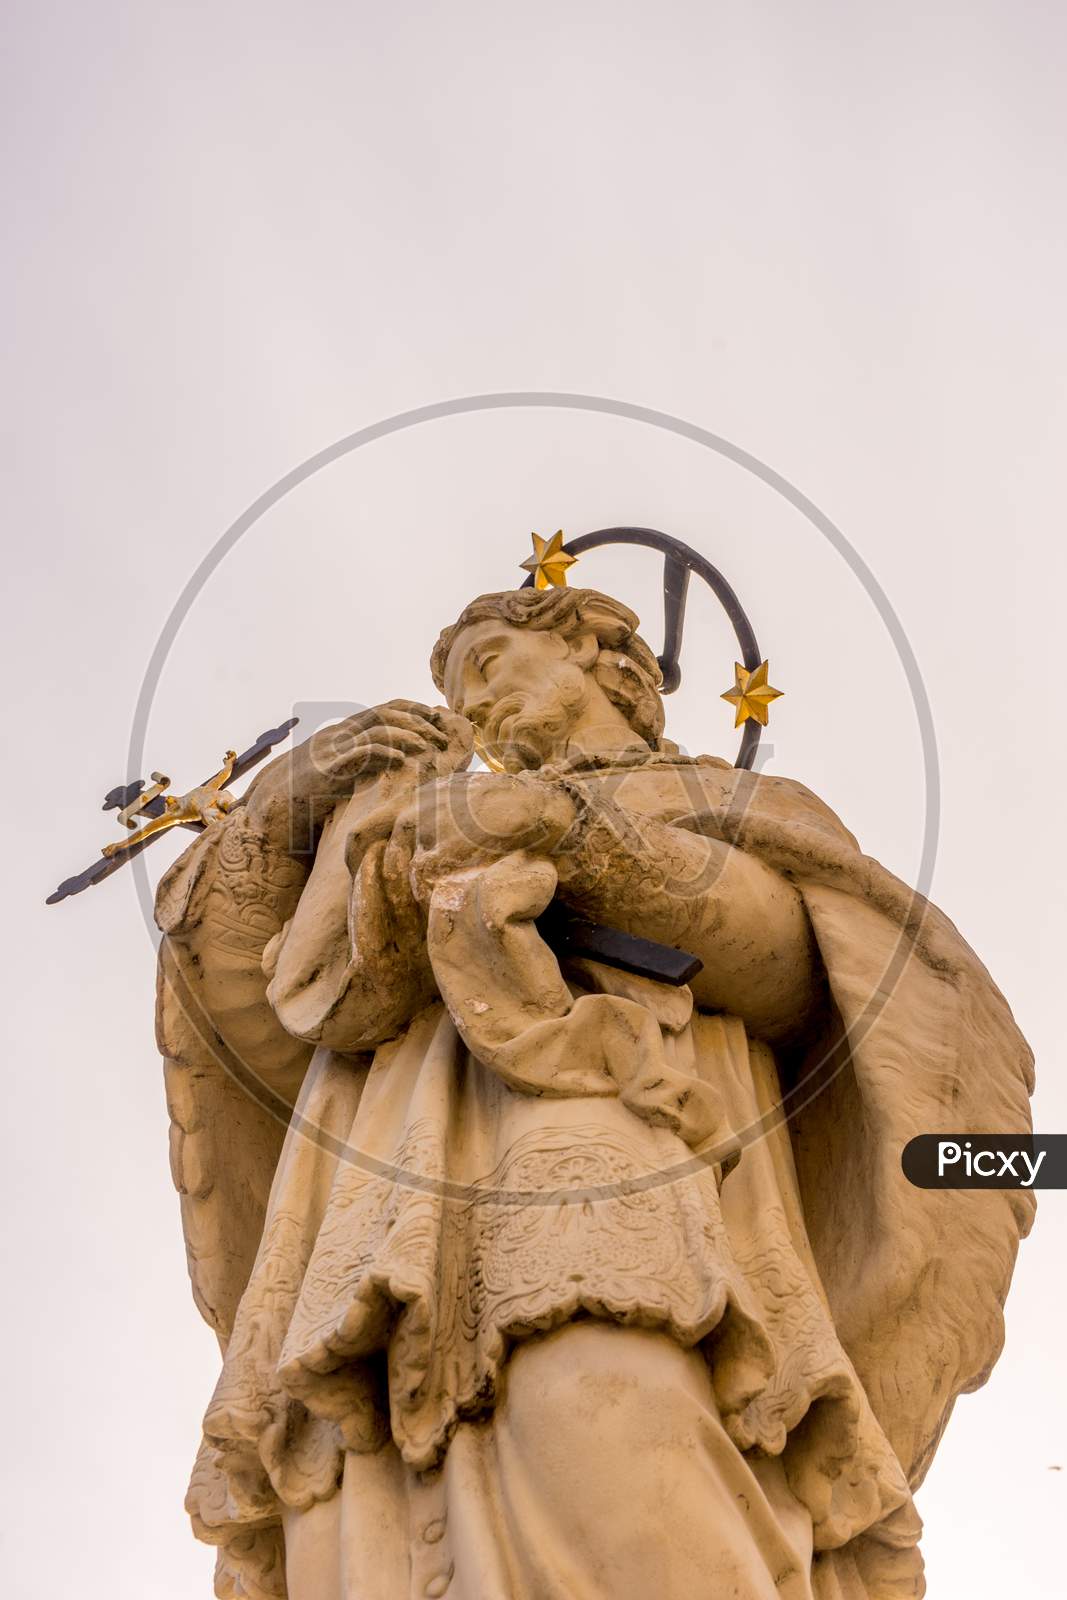 Belgium, Bruges, Statue Of Jesus